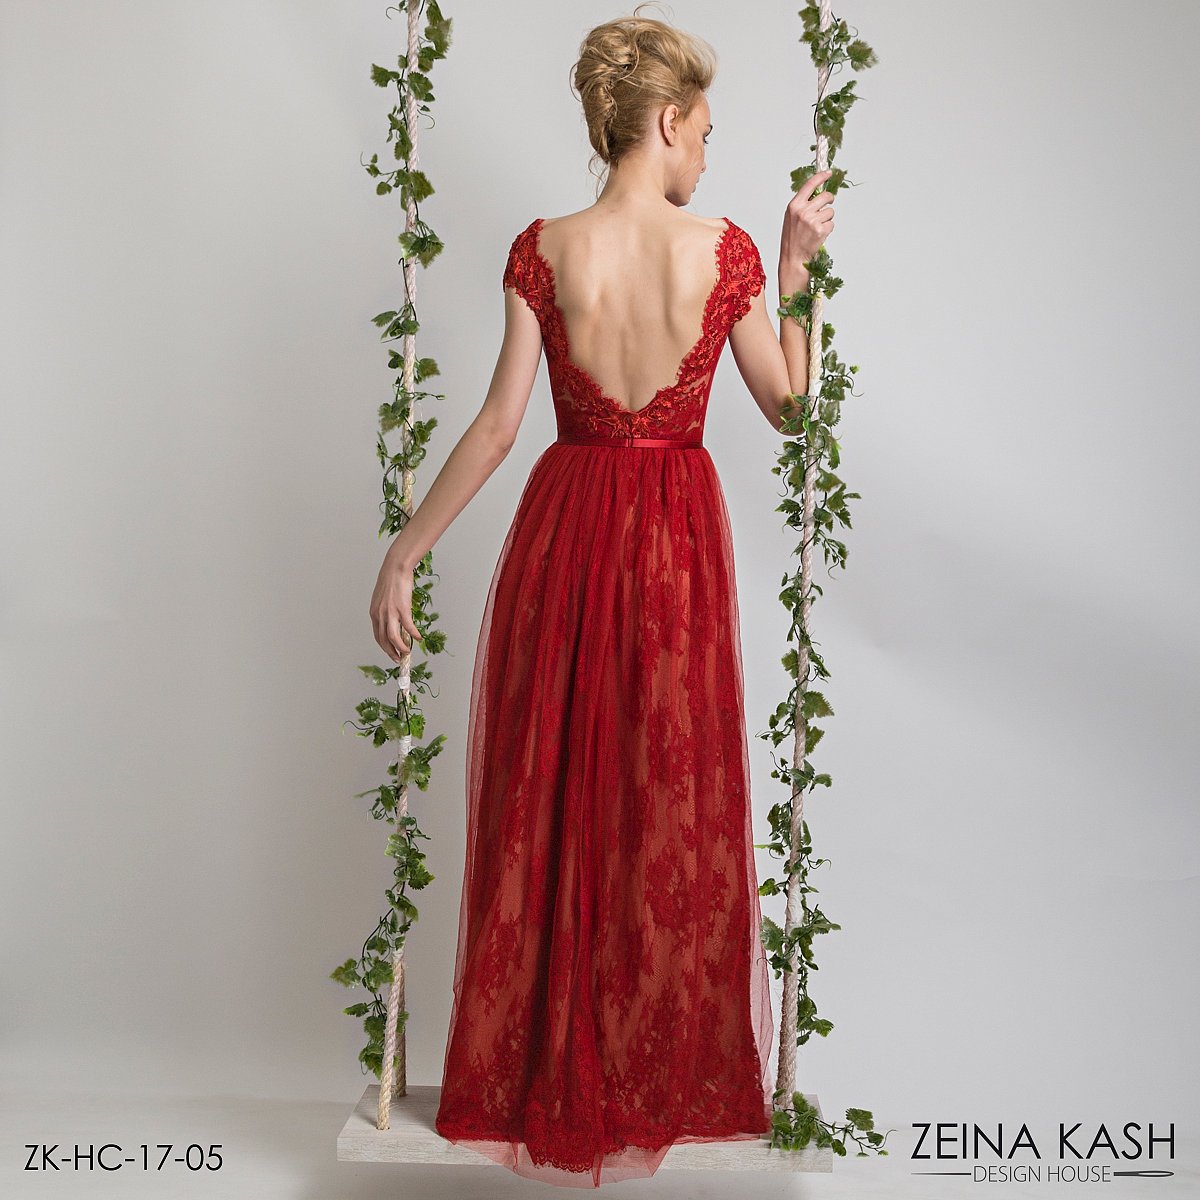 Zeina Kash Frühjahr/Sommer 2017 - Couture - 1